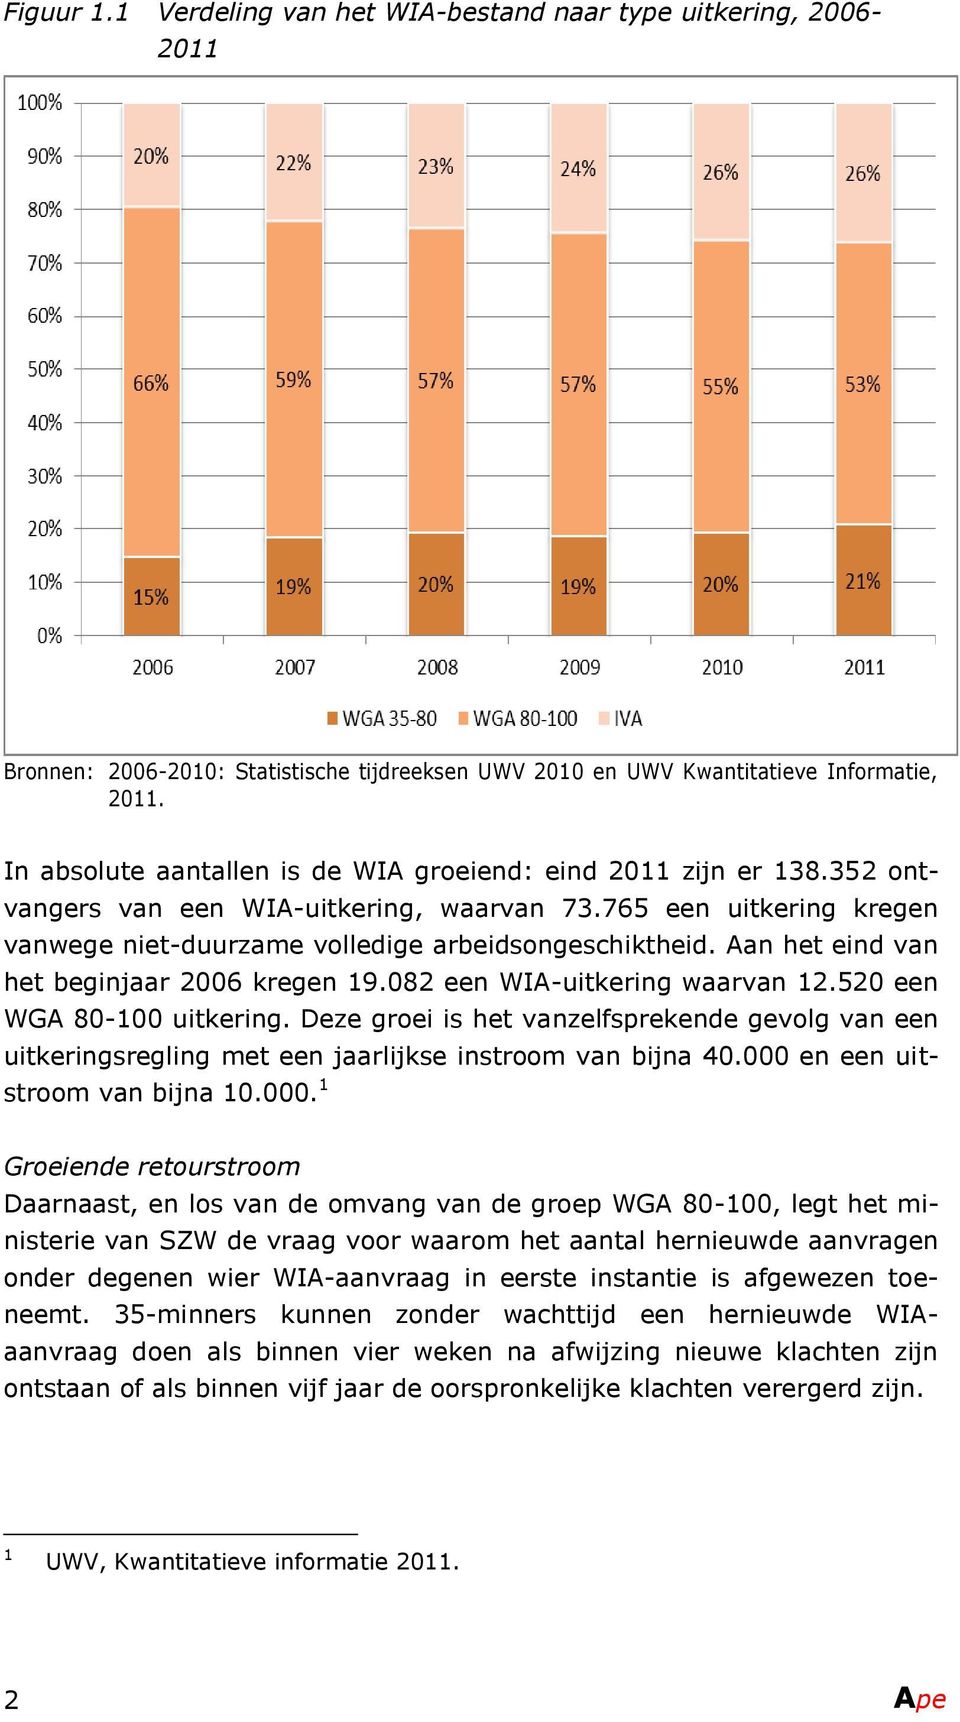 Aan het eind van het beginjaar 2006 kregen 19.082 een WIA-uitkering waarvan 12.520 een WGA 80-100 uitkering.